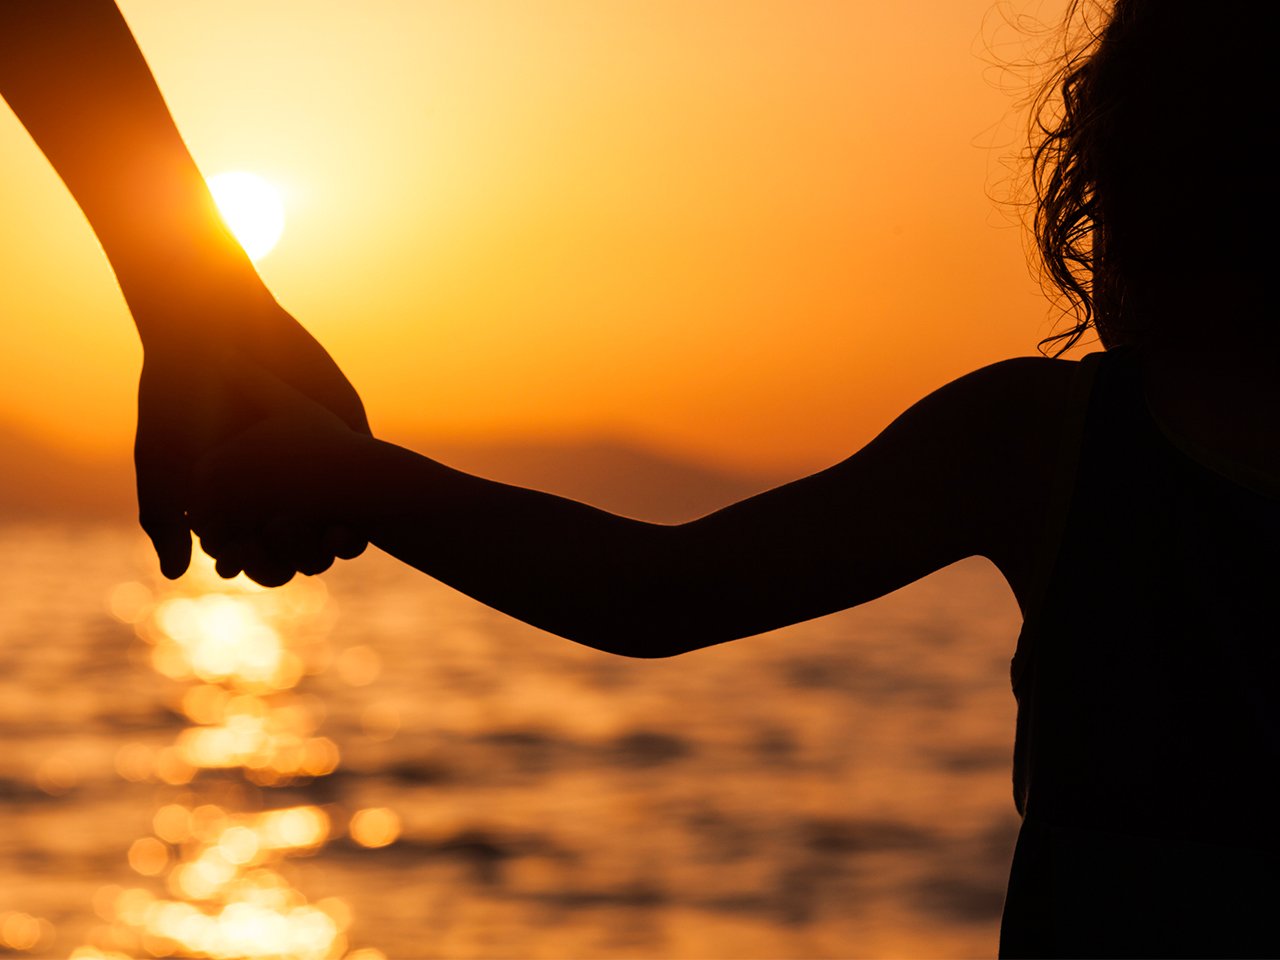  Femme et bambin se tenant la main au coucher du soleil 